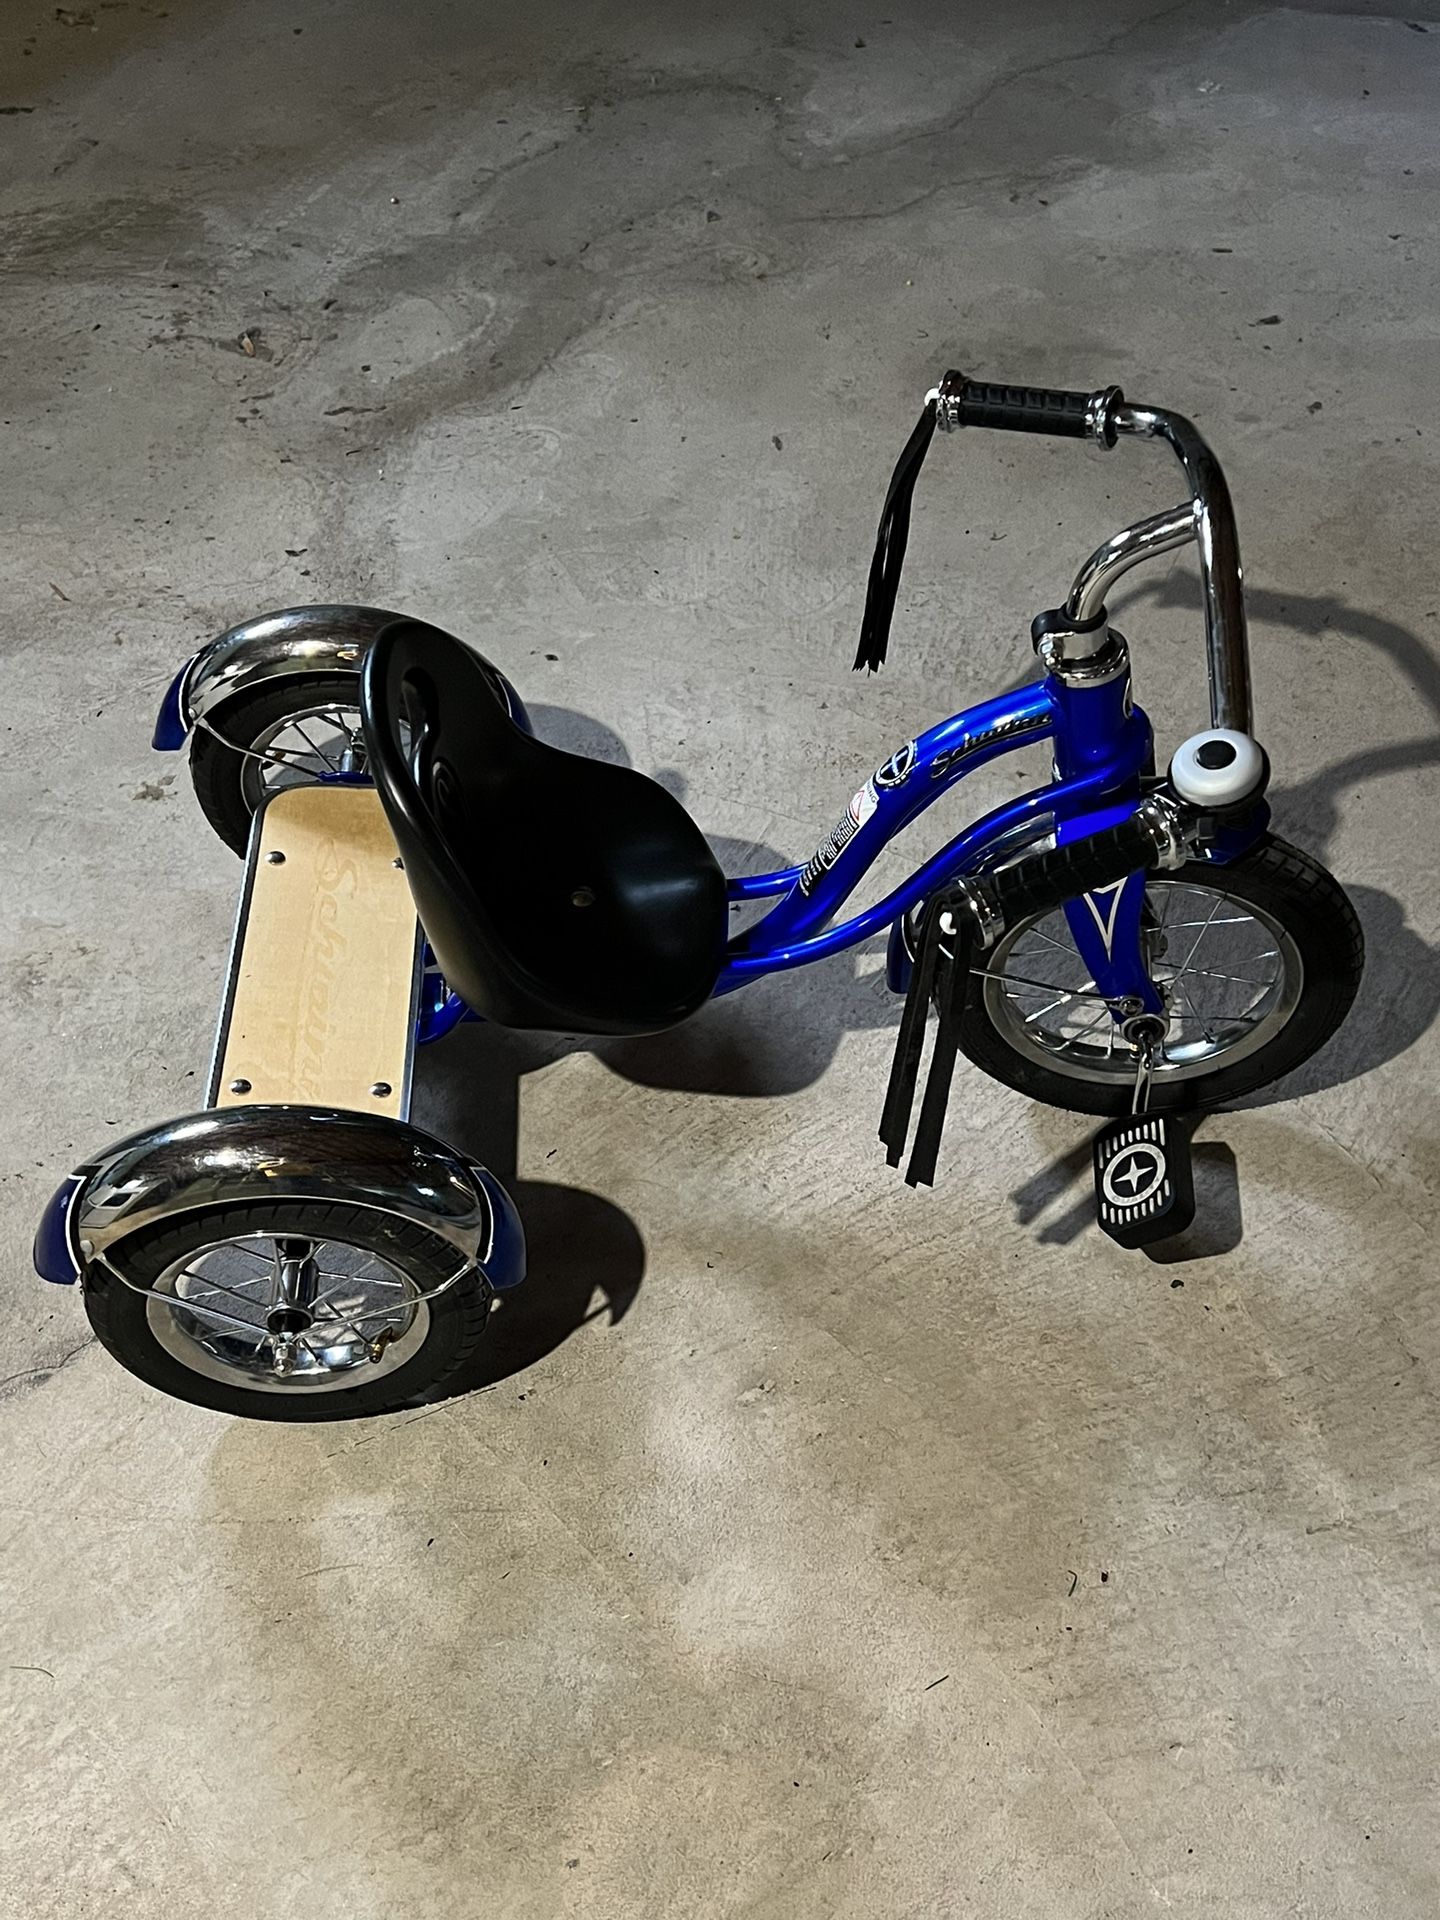 Schwinn Roadster Tricycle For Kids